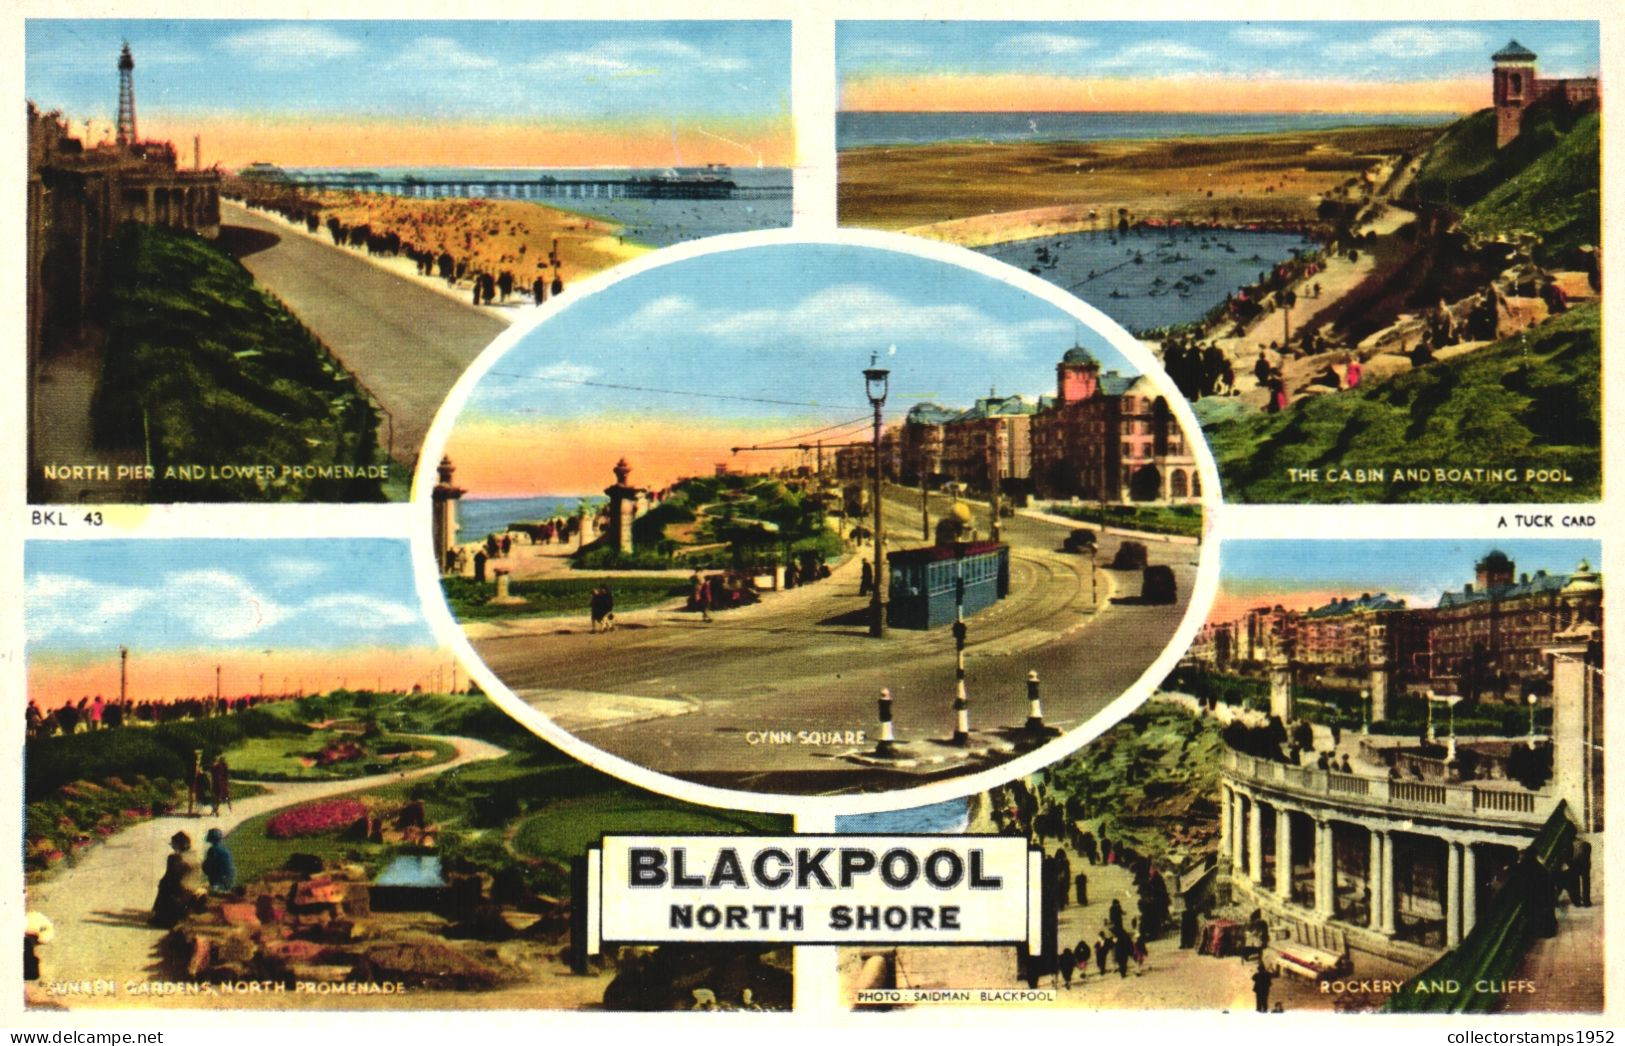 LANCANSHIRE, BLACKPOOL, NORTH SHORE, UNITED KINGDOM - Blackpool